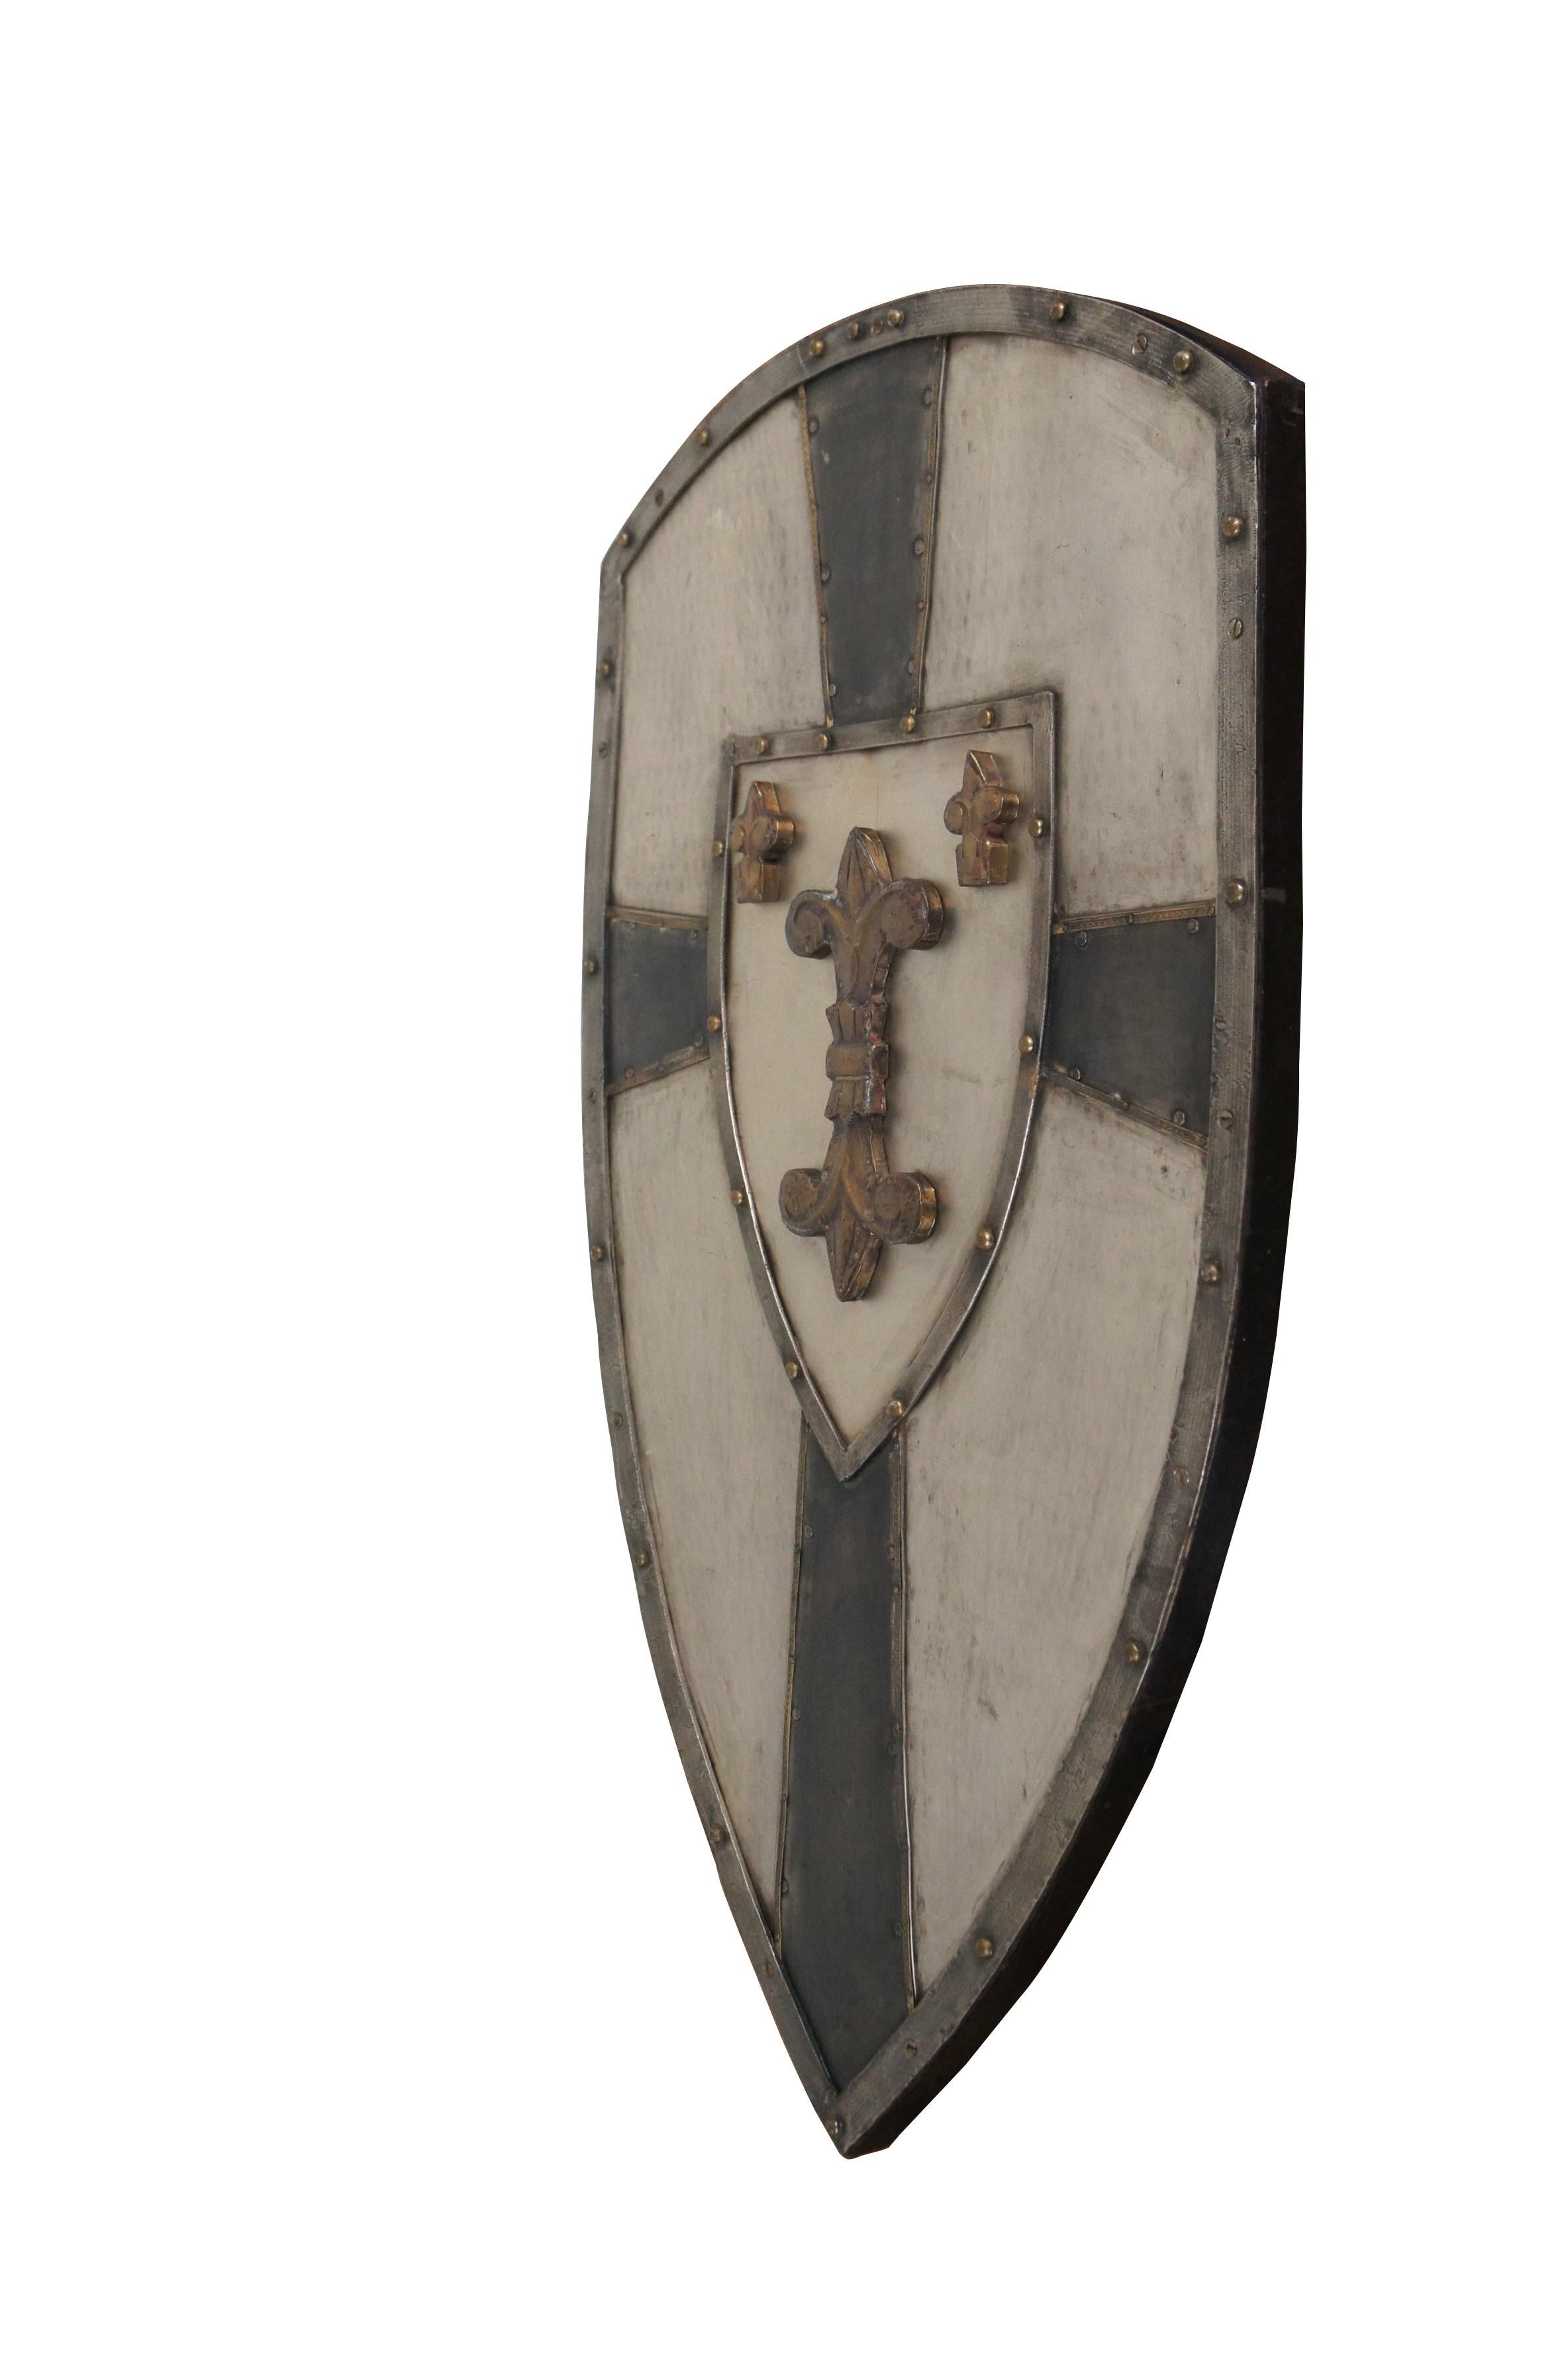 Medieval Charlemagne Hammered Metal French Crusader Knights Shield Fleur de Lis 32